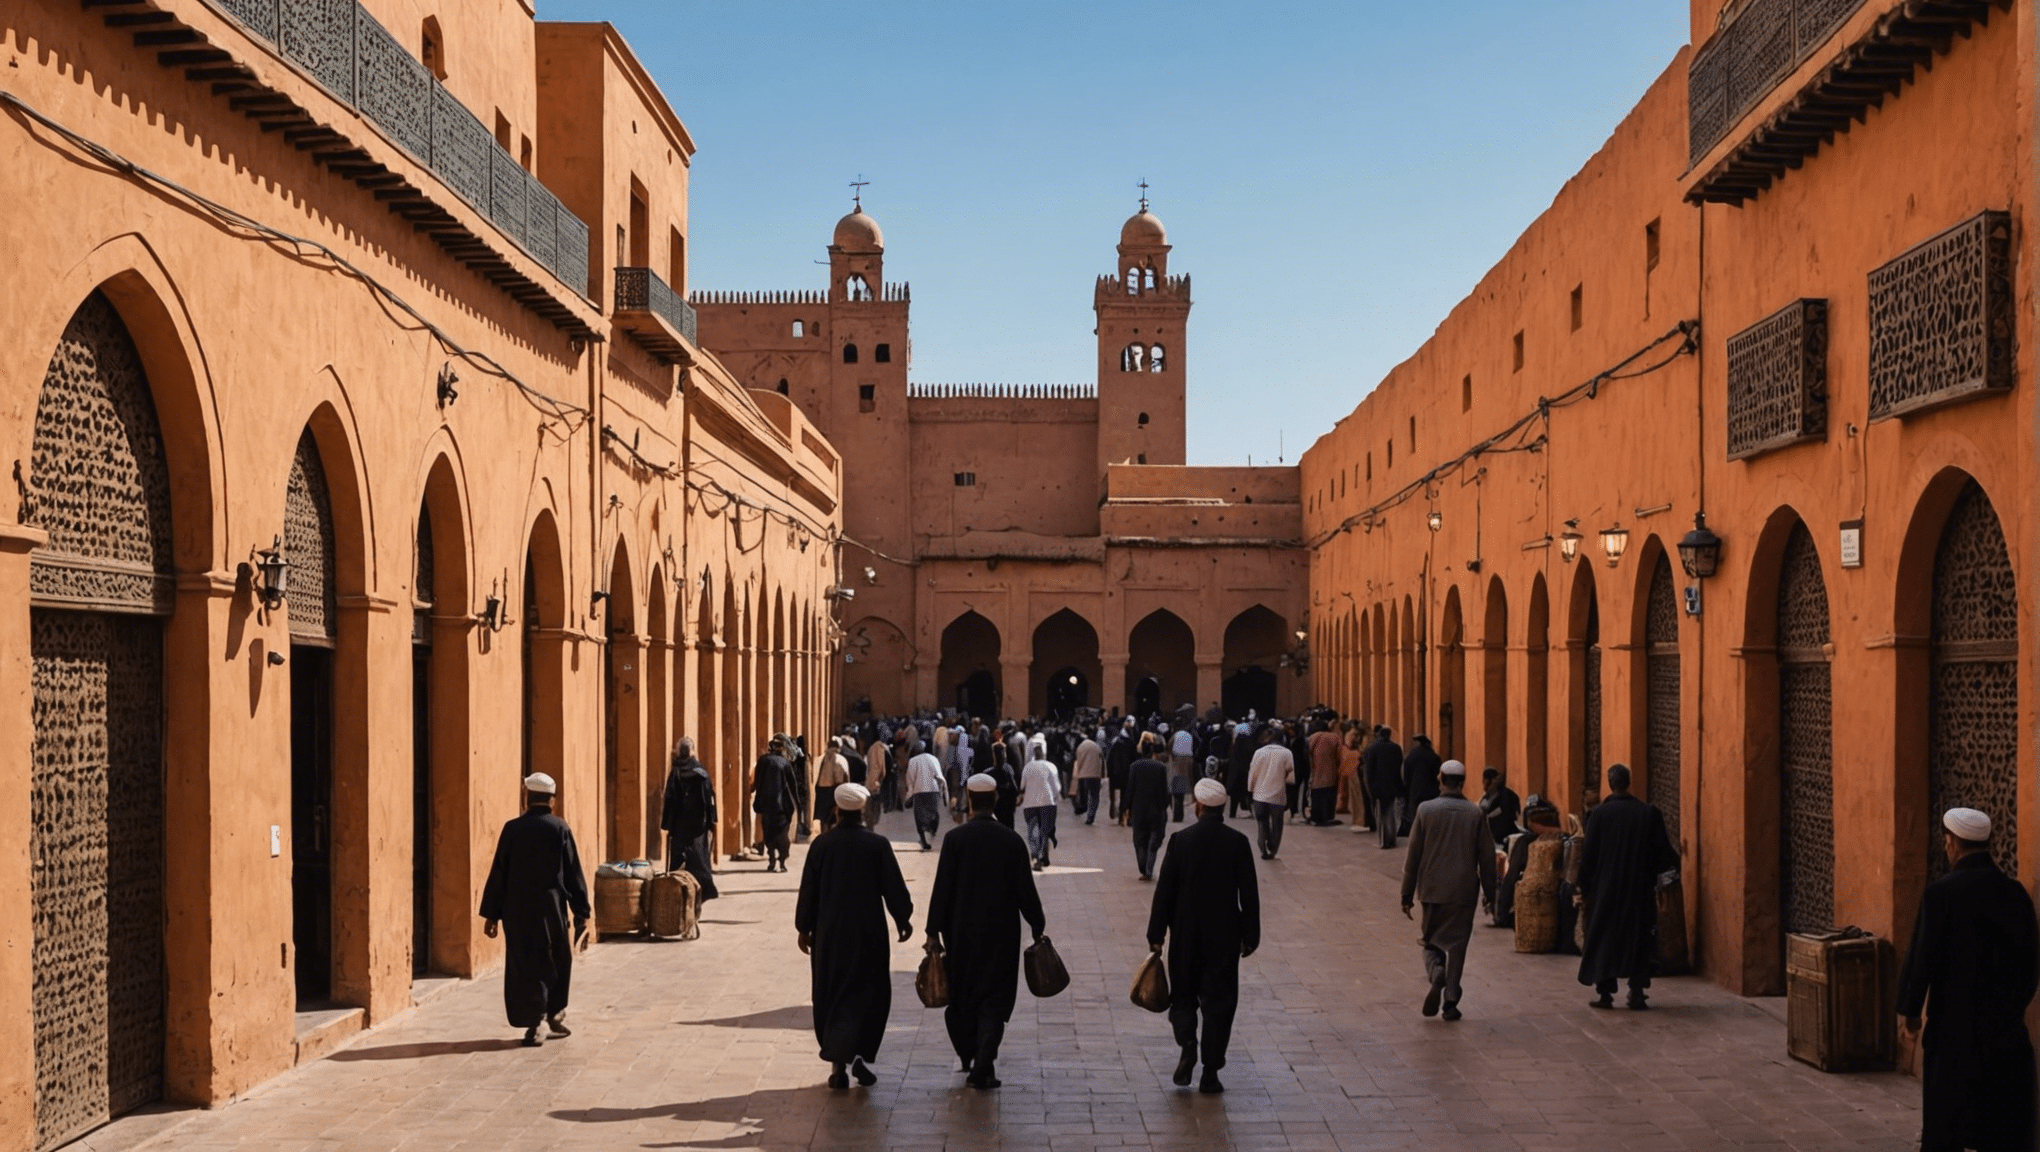 ¡Descubre la mejor manera de llegar a la medina desde el aeropuerto de Marrakech y comienza tu aventura en Marruecos sin complicaciones!